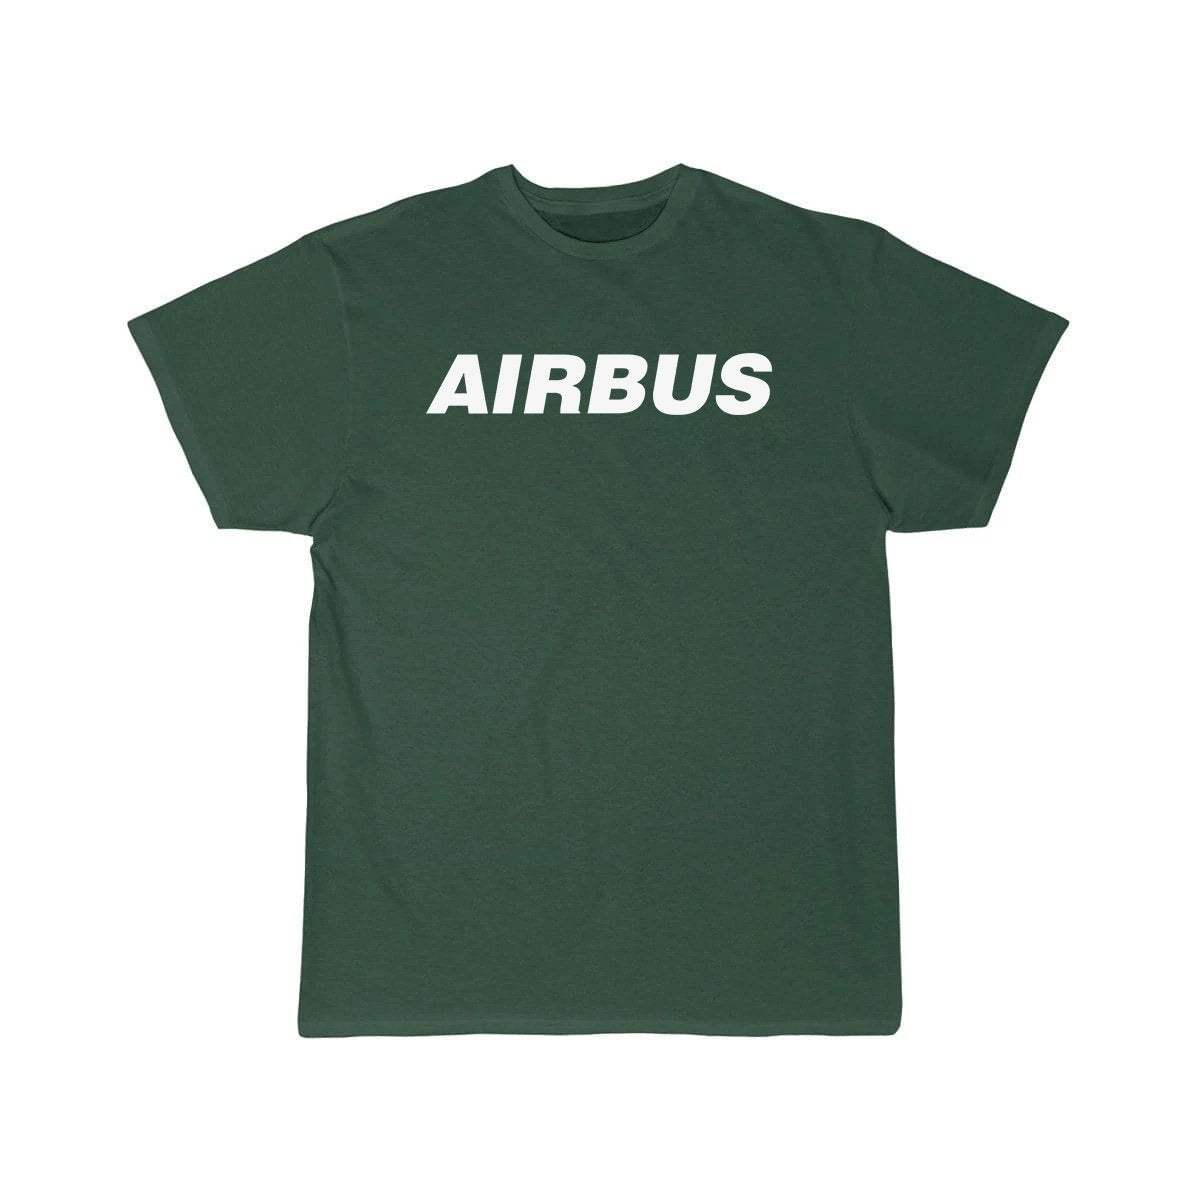 AIRBUS DESIGNED T SHIRT THE AV8R